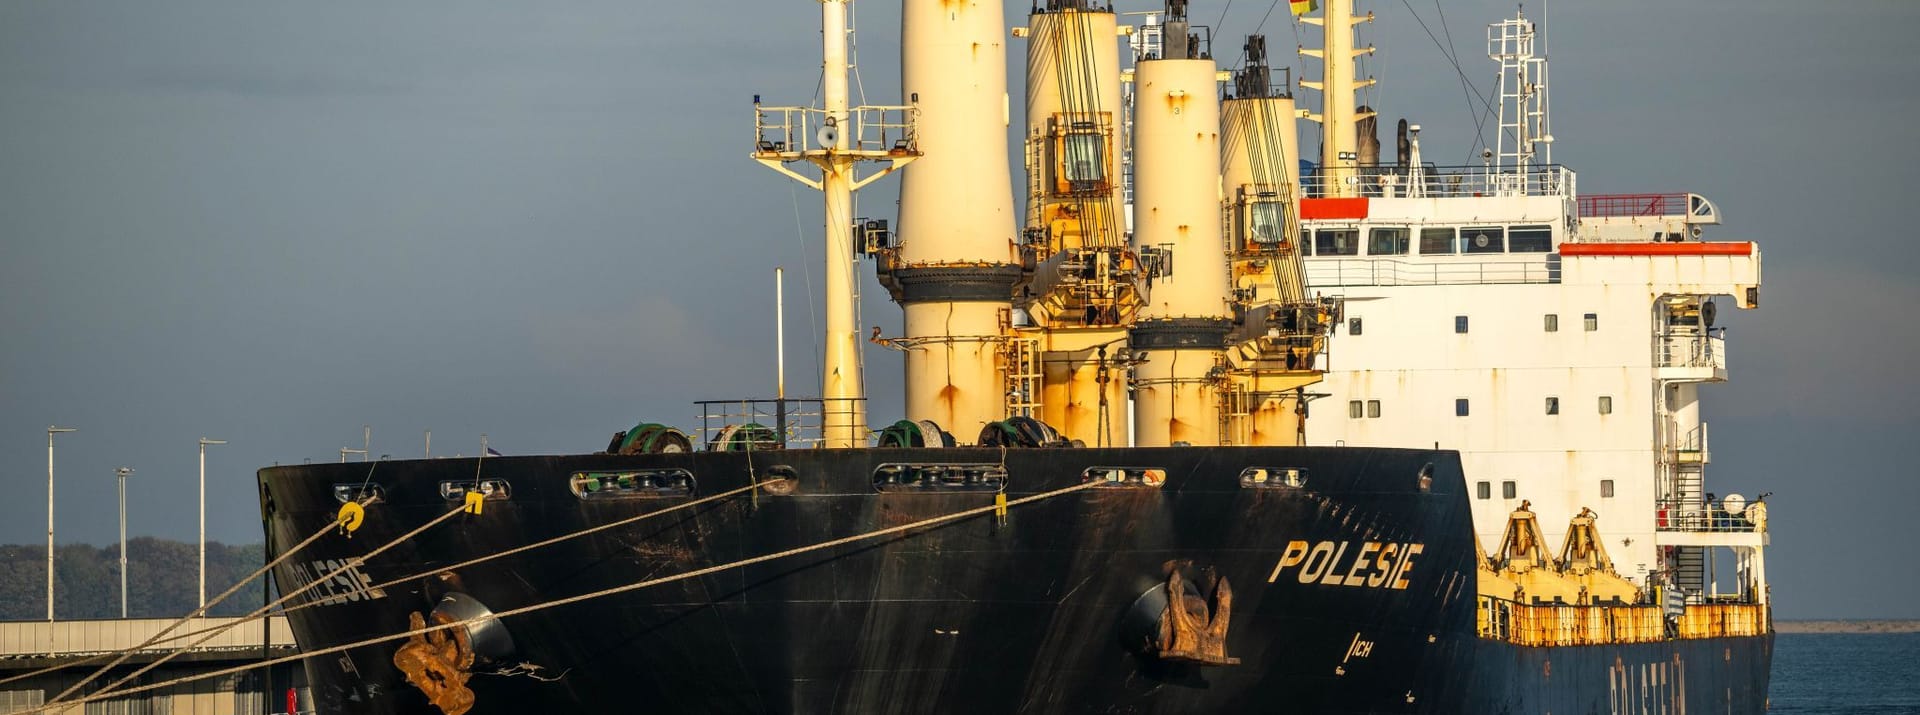 Cuxhaven: Das Frachtschiff "Polesie" liegt im Hafen. Es war am Dienstag mit dem Frachter "Verity" auf der Nordsee zusammengestoßen.